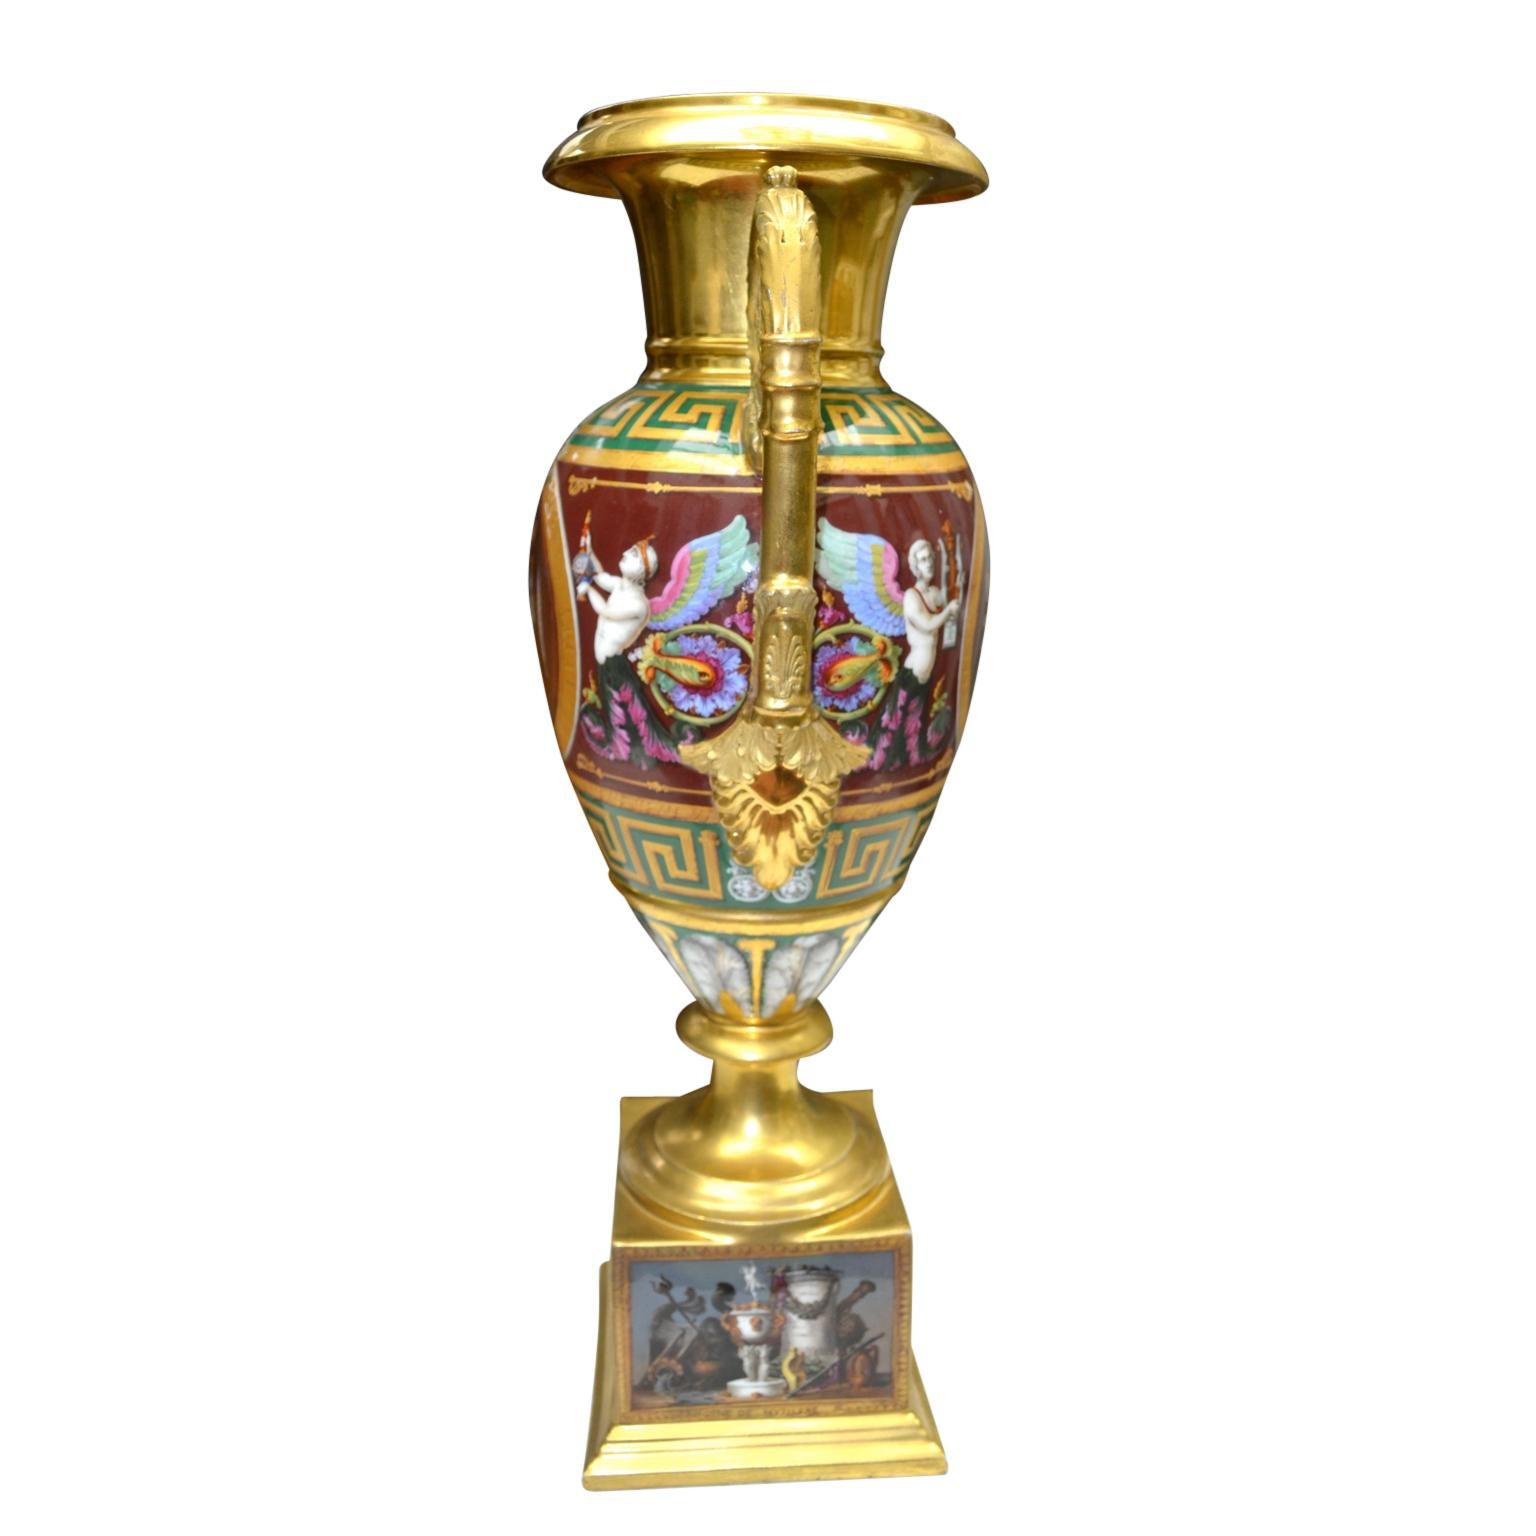 Une urne en porcelaine de Paris du début du 19e siècle de qualité musée. Le vase à deux anses repose sur une base rectangulaire en porcelaine (modelée comme une partie du vase), qui est décorée sur les quatre côtés de scènes finement peintes